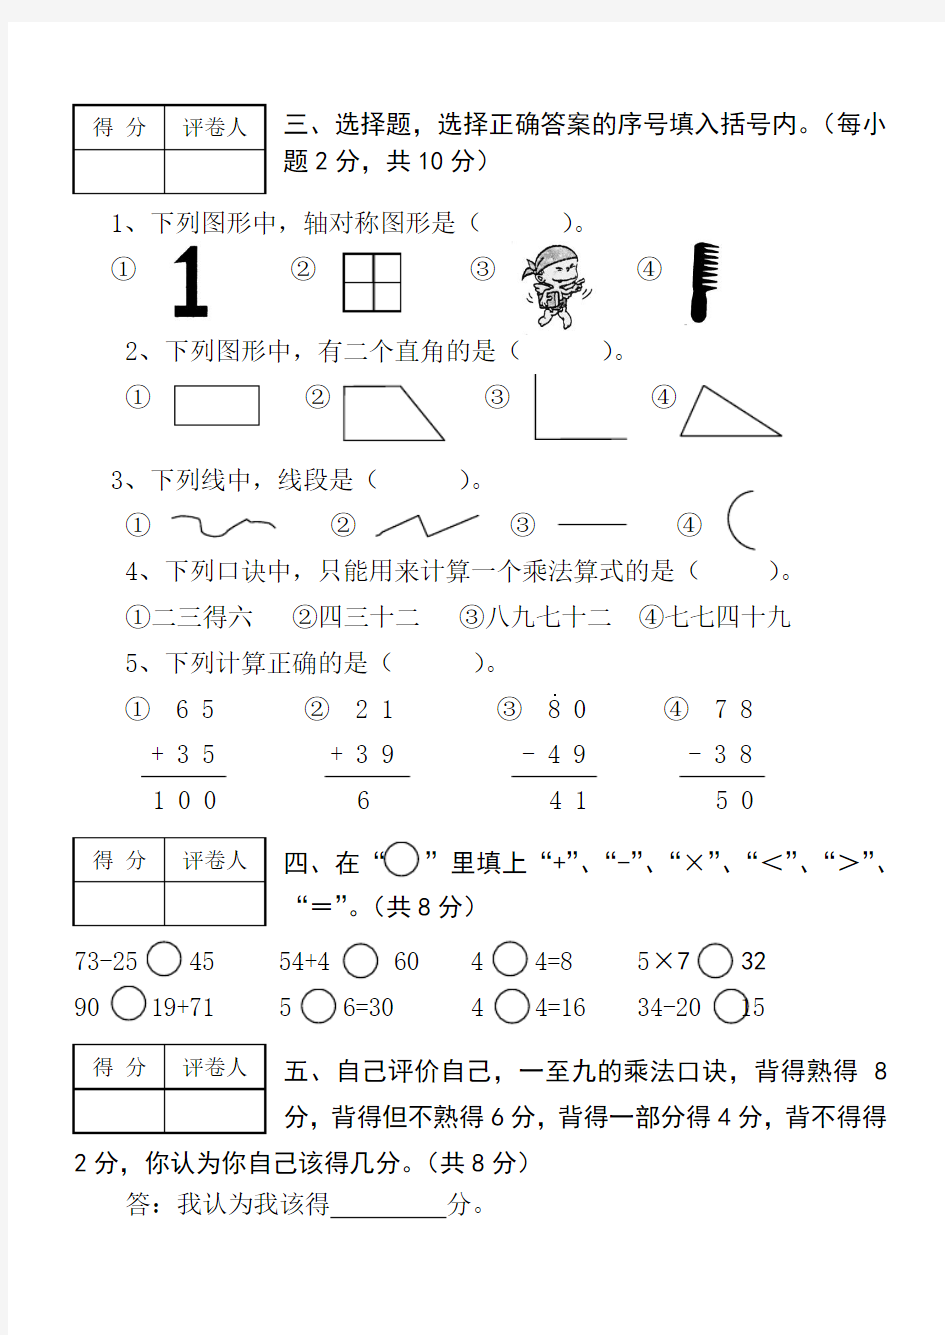 【最新】小学二年级数学试卷(附图)